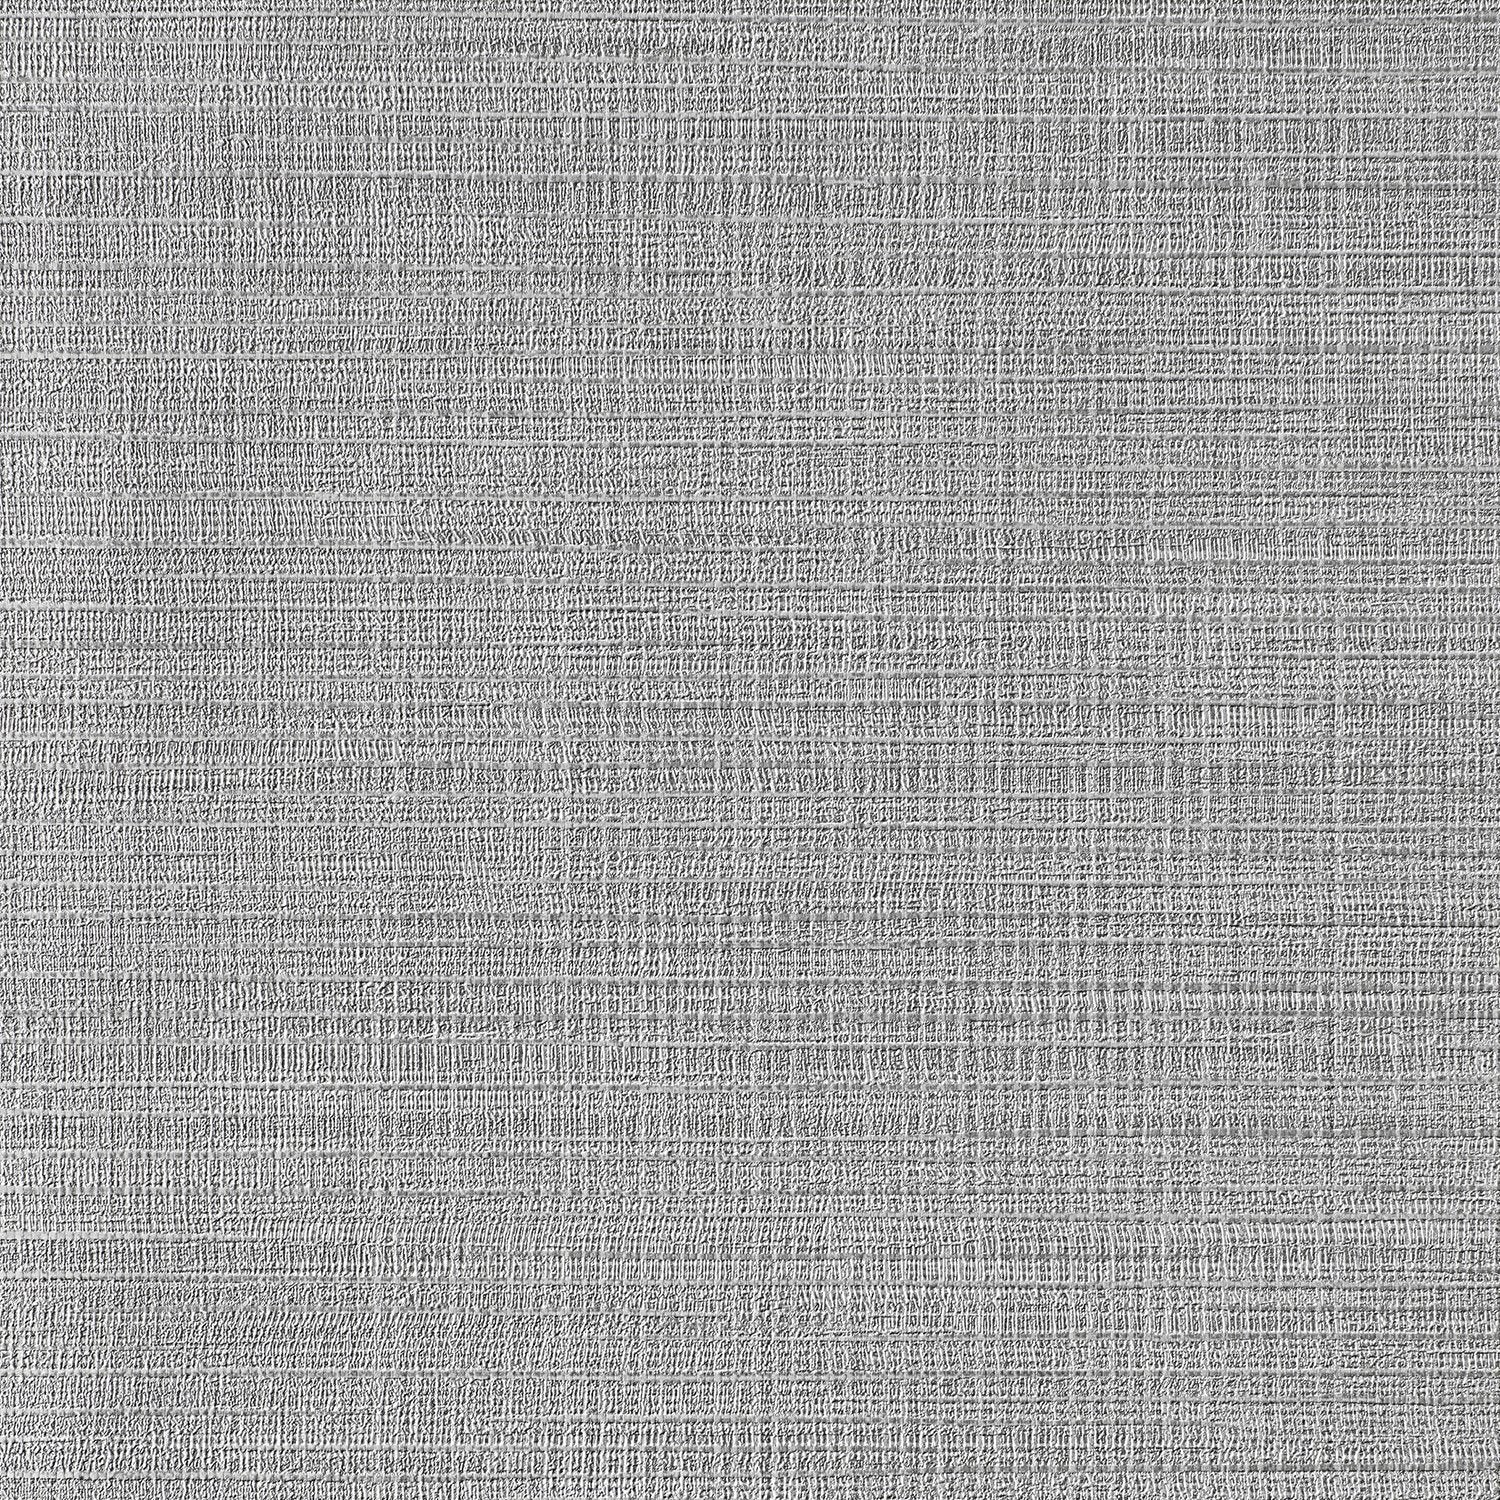 Mesh fabric texture Stock Photo by ©koydesign 61306977